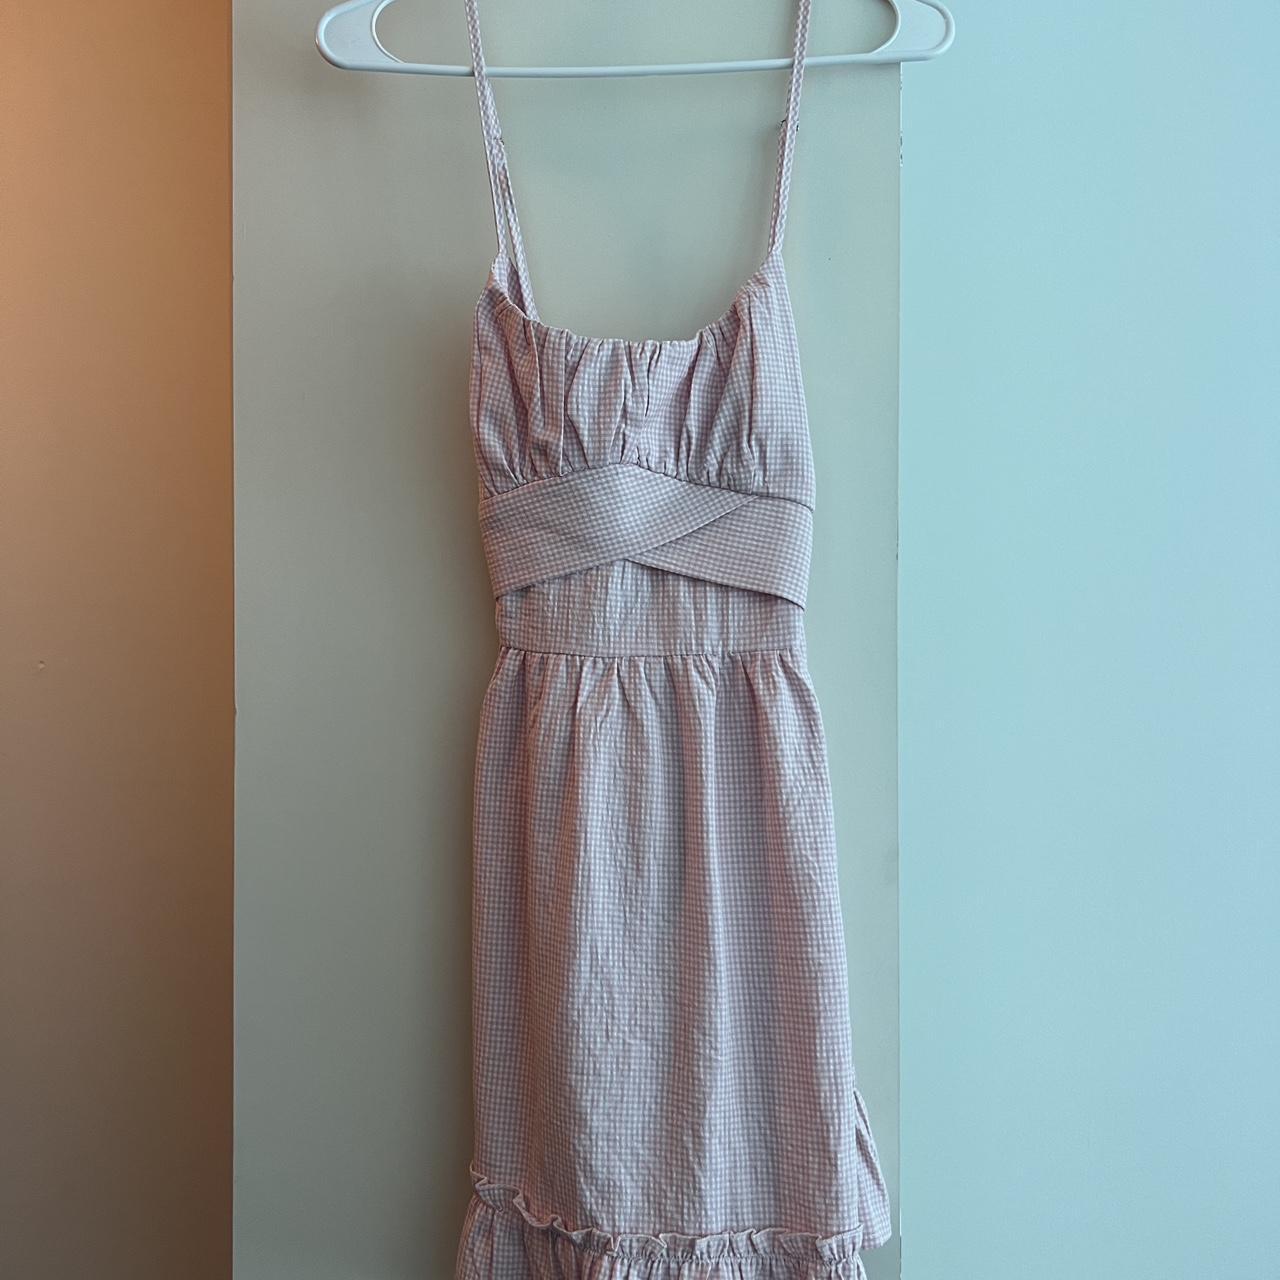 ZAFUL Women's Pink and White Dress (2)